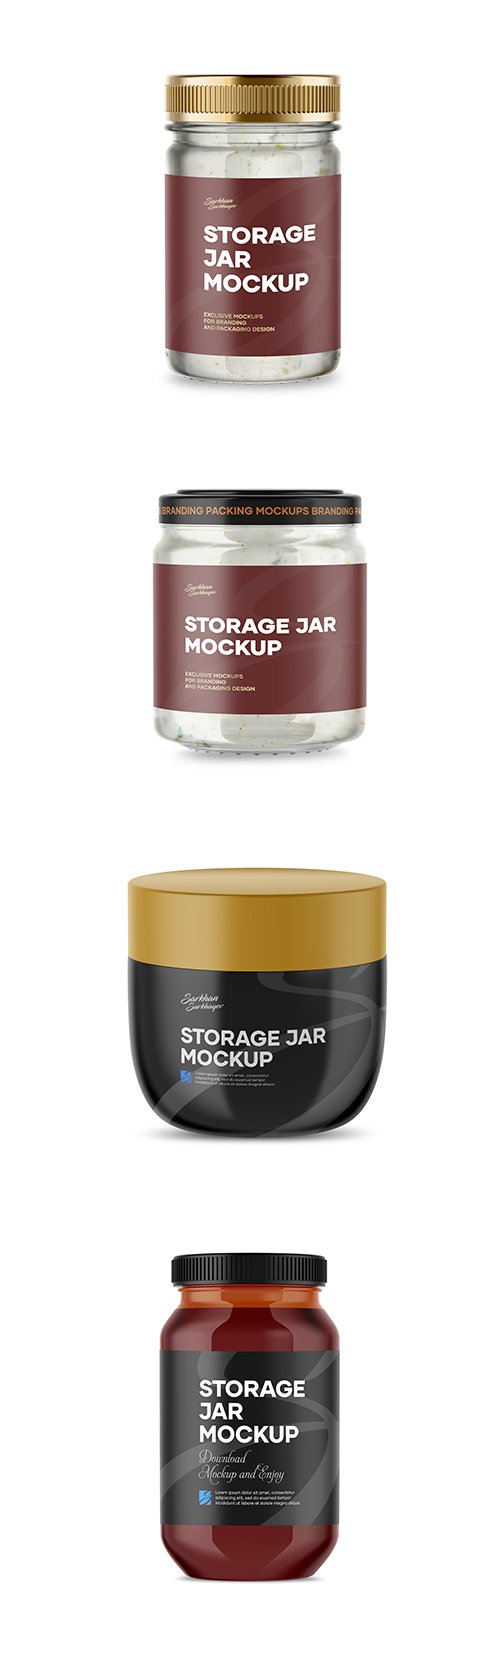 Storage Jar Mockup Template